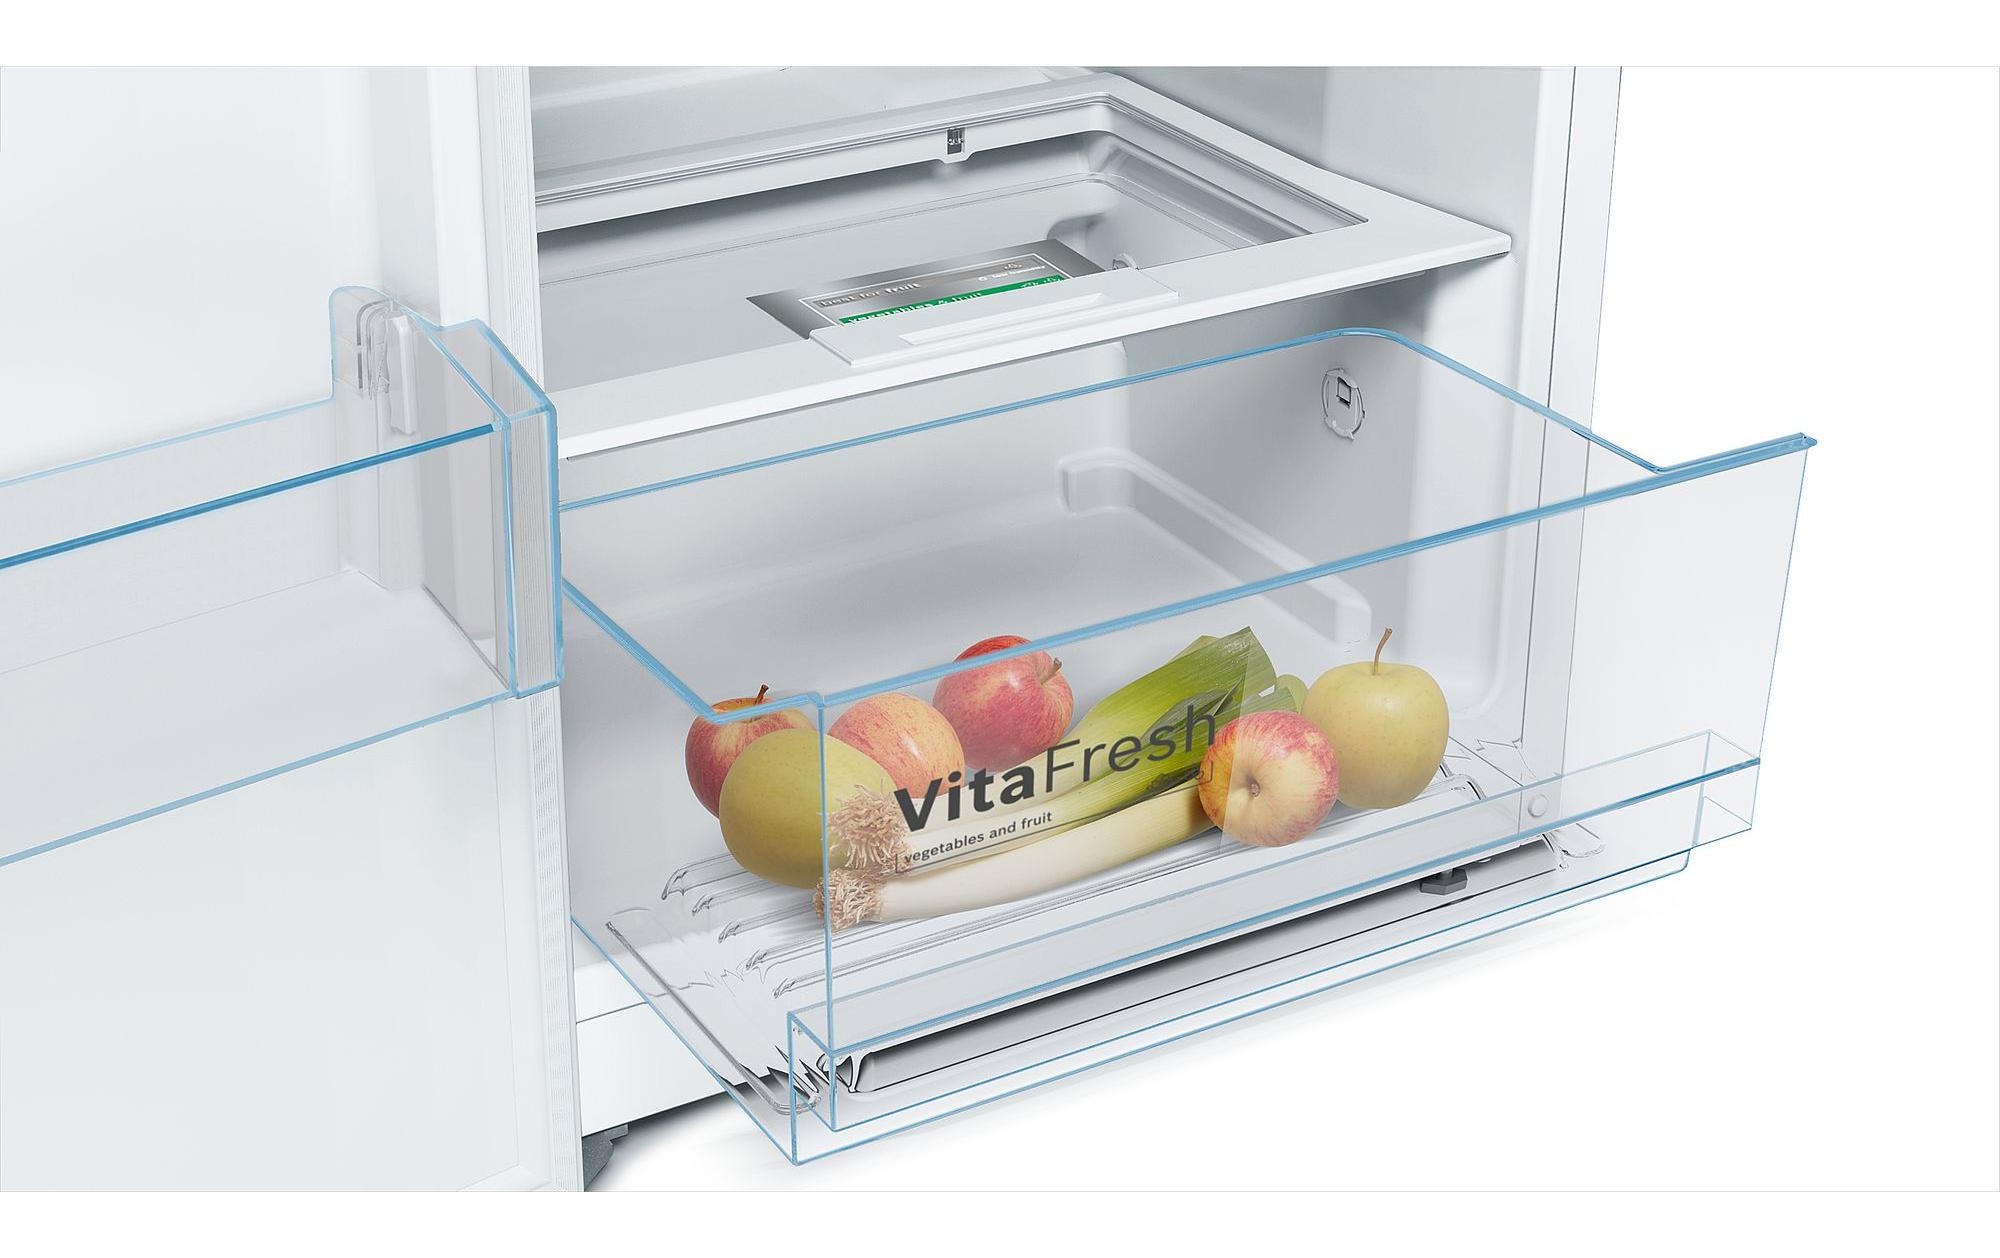 BOSCH Kühlschrank, KSV29 VWEP, 161 cm hoch, 60 cm breit günstig kaufen